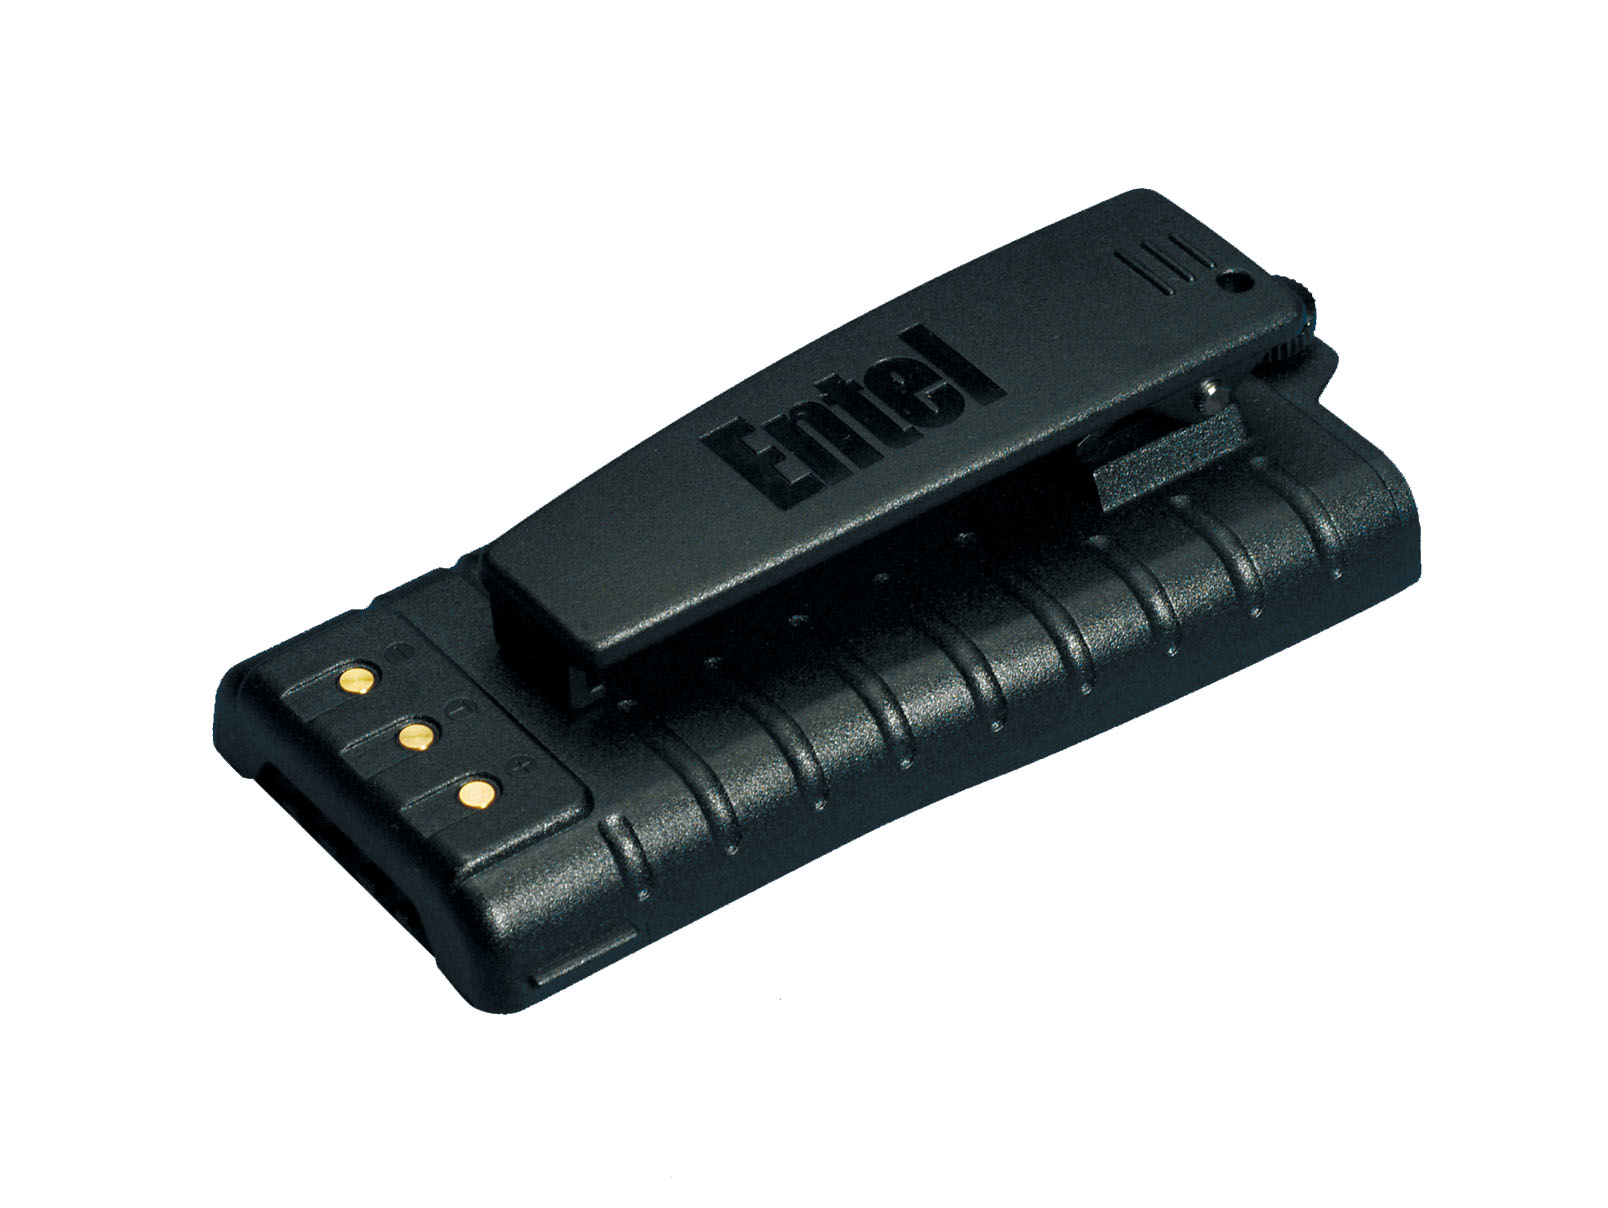 Batteries : Entel CNB850E / CNB850 for Entel HT U.S.T.C